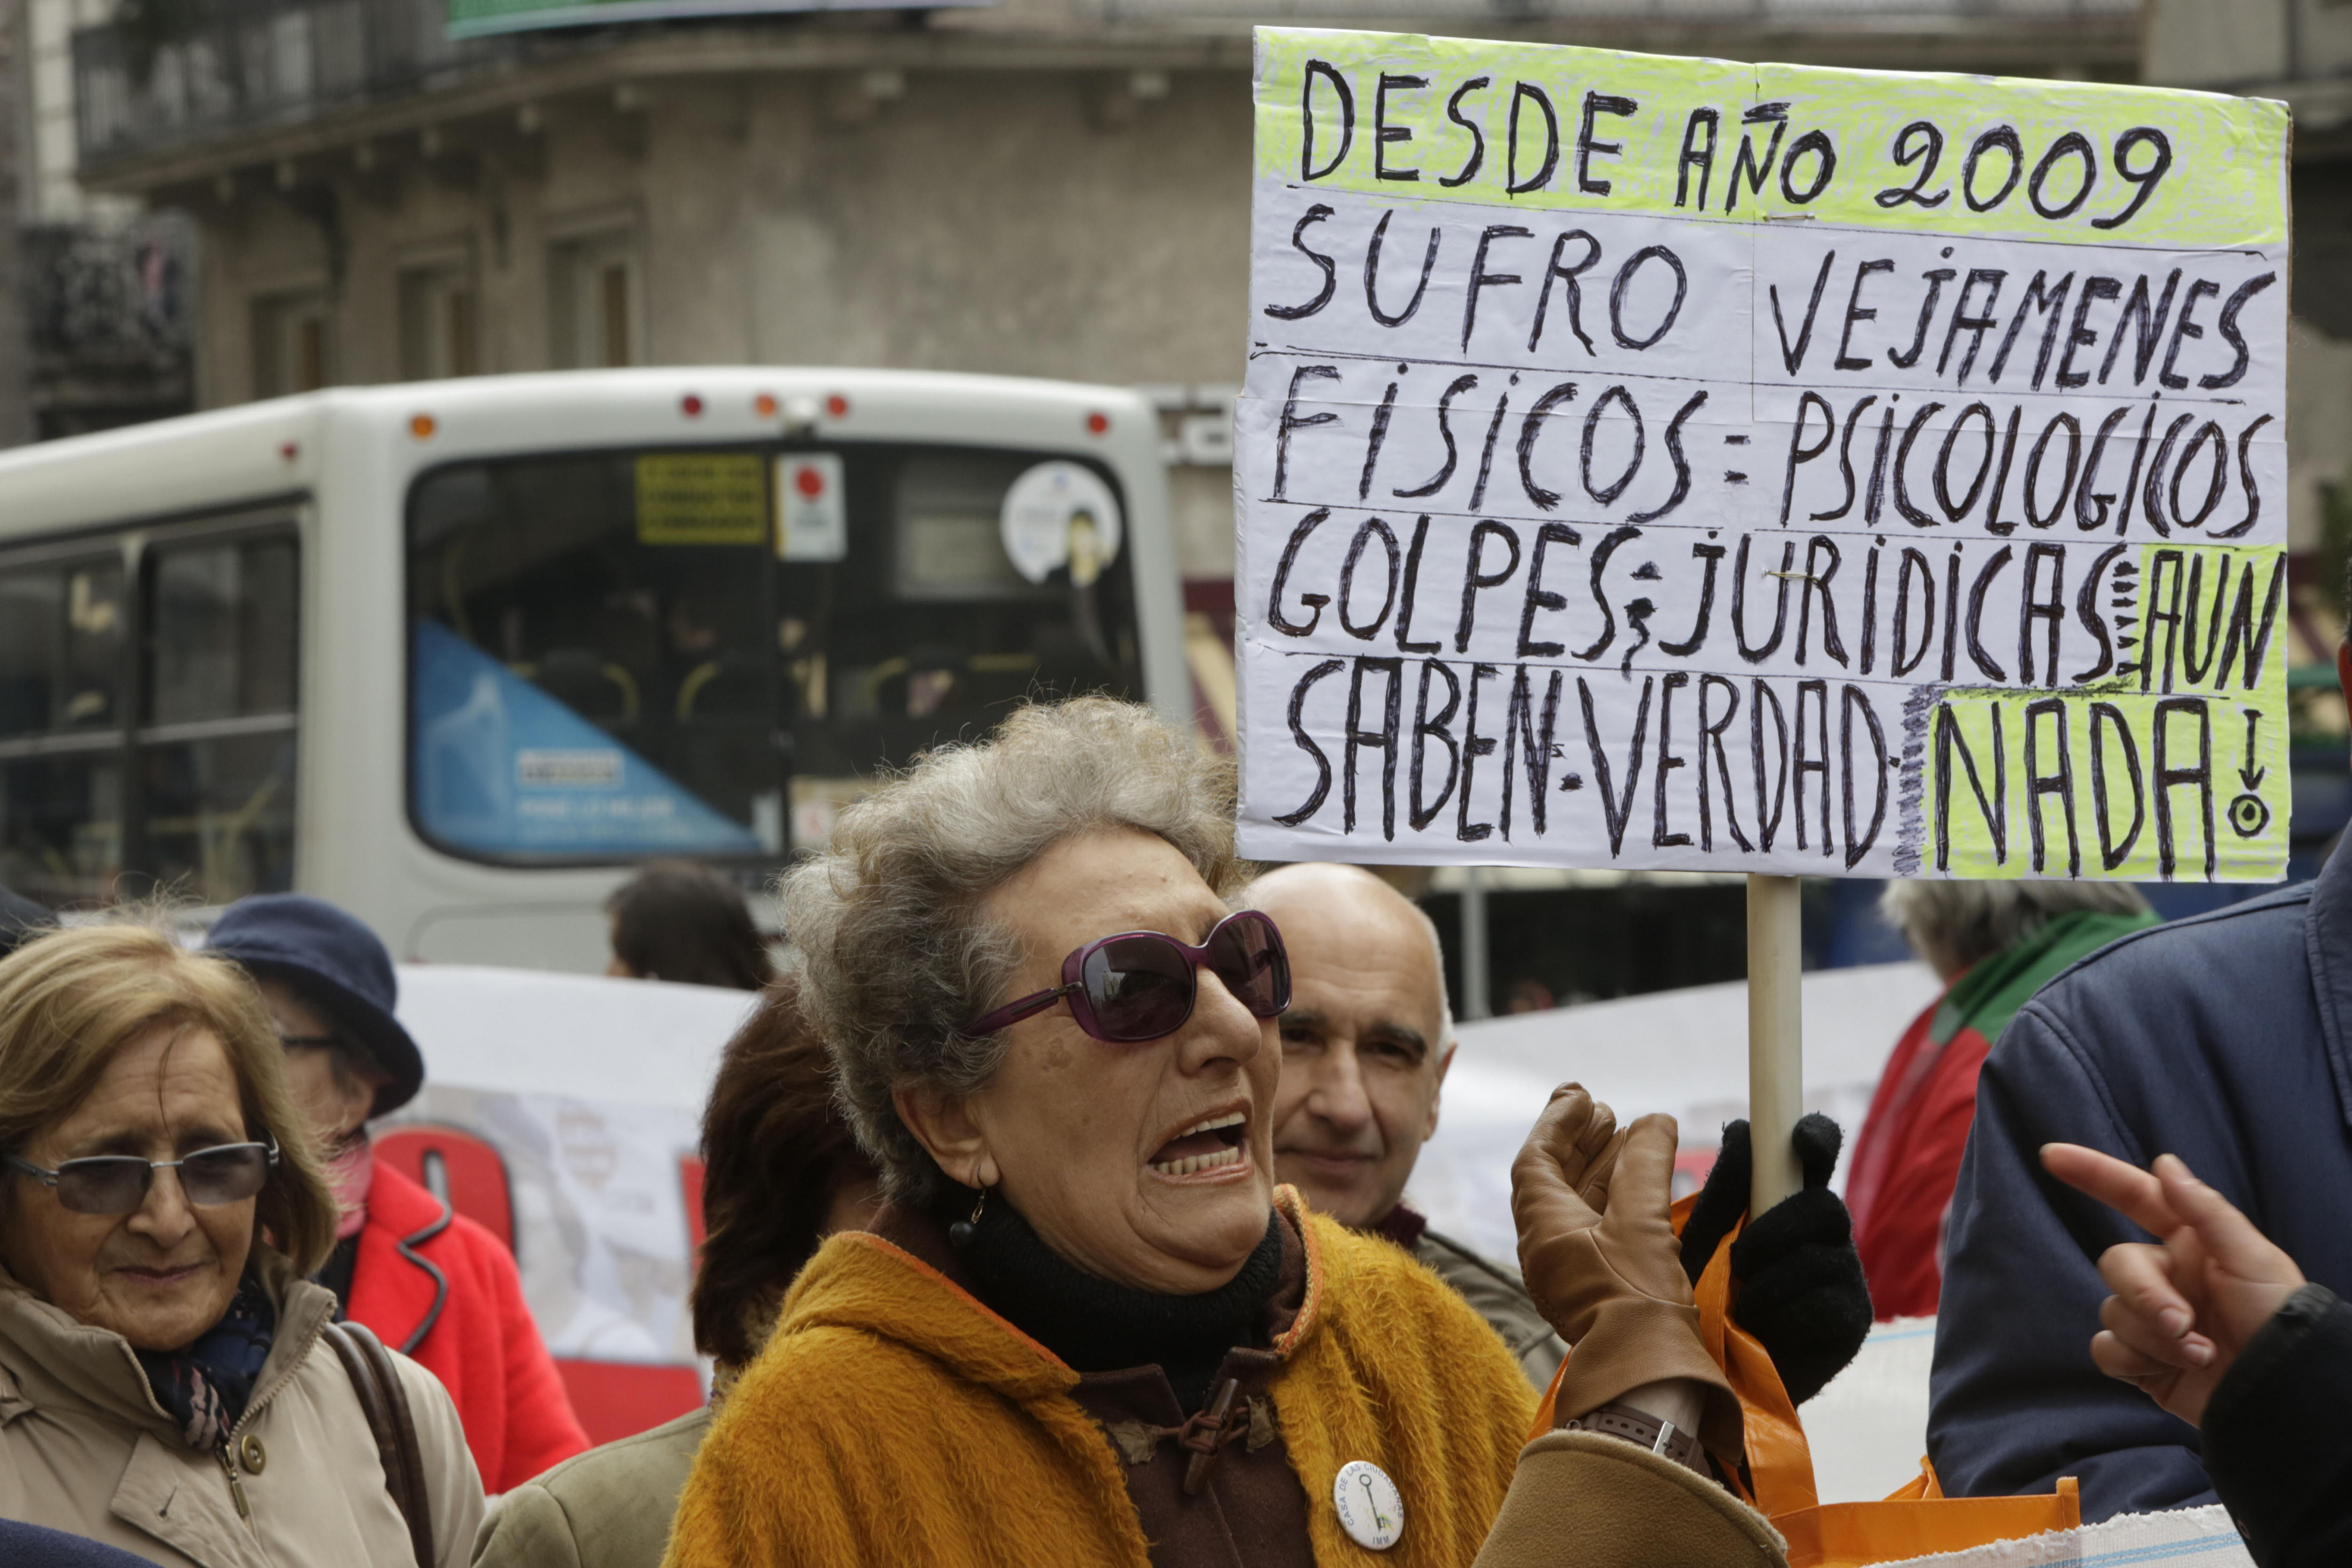 Las mujeres argentinas son impulsadas a denunciar las agresiones gracias a las constantes campañas de concienciación.